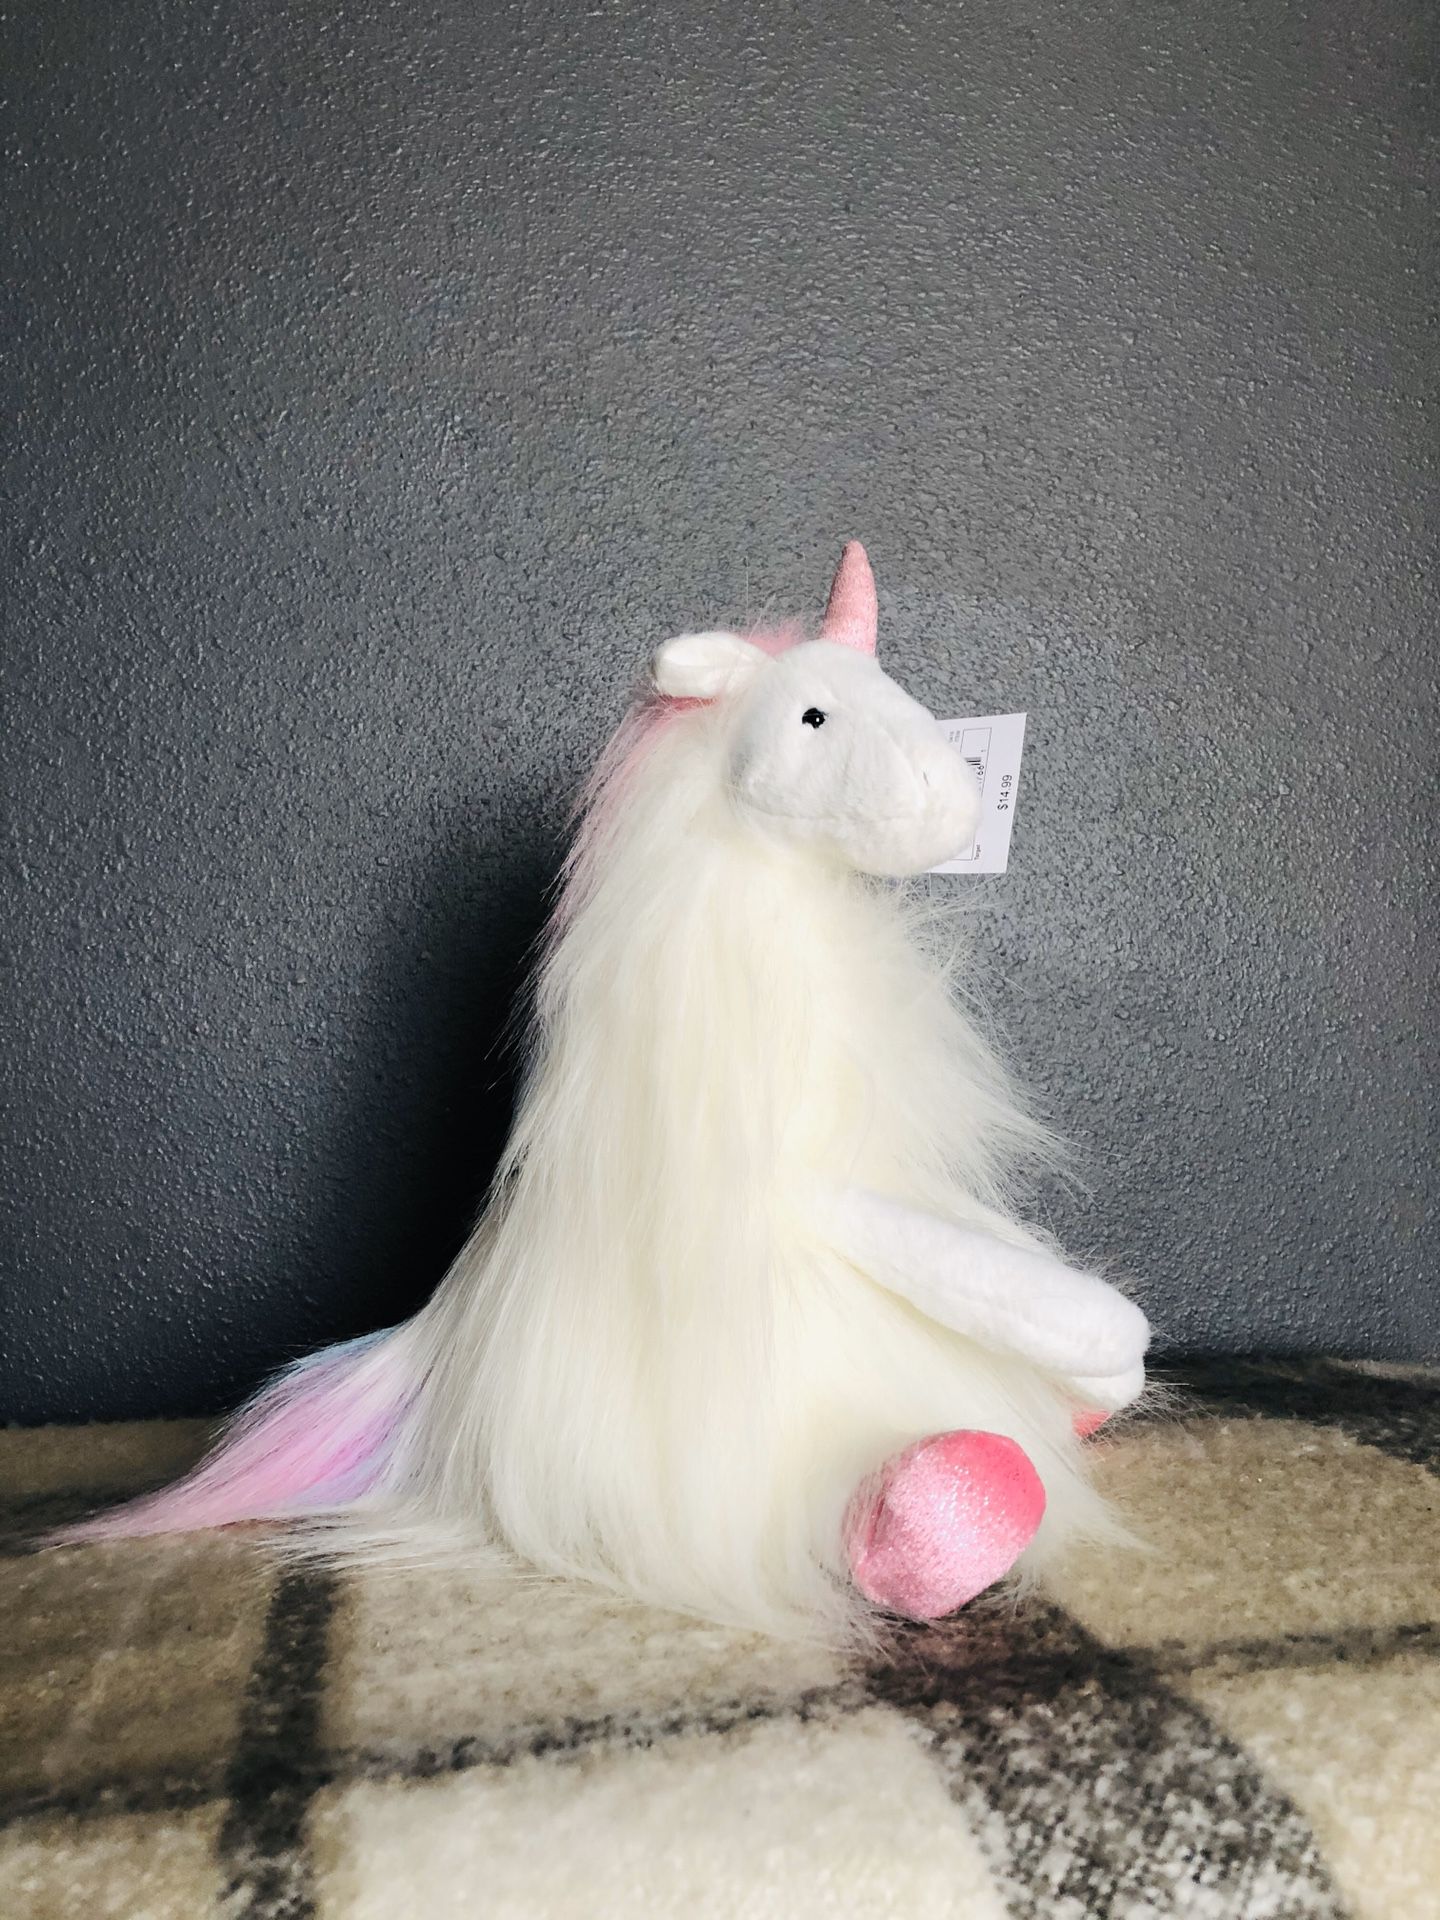 Pink unicorn plush stuffed animal